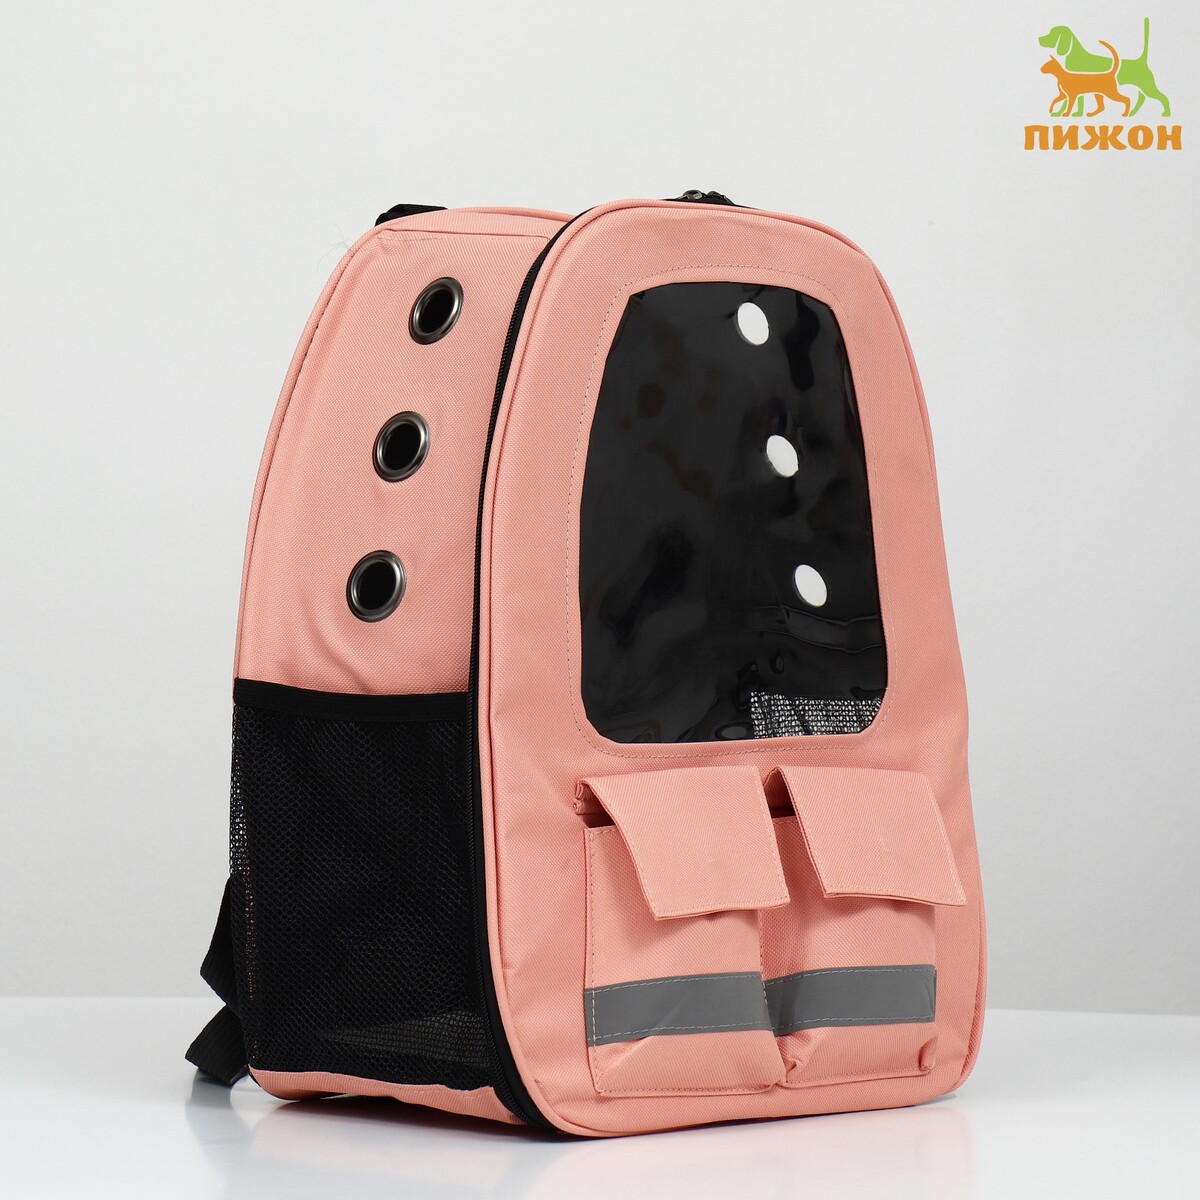 Рюкзак для переноски животных с окном для обзора, розовый подарочная коробка сборная с окном розовый 11 5 х 11 5 х 3 см